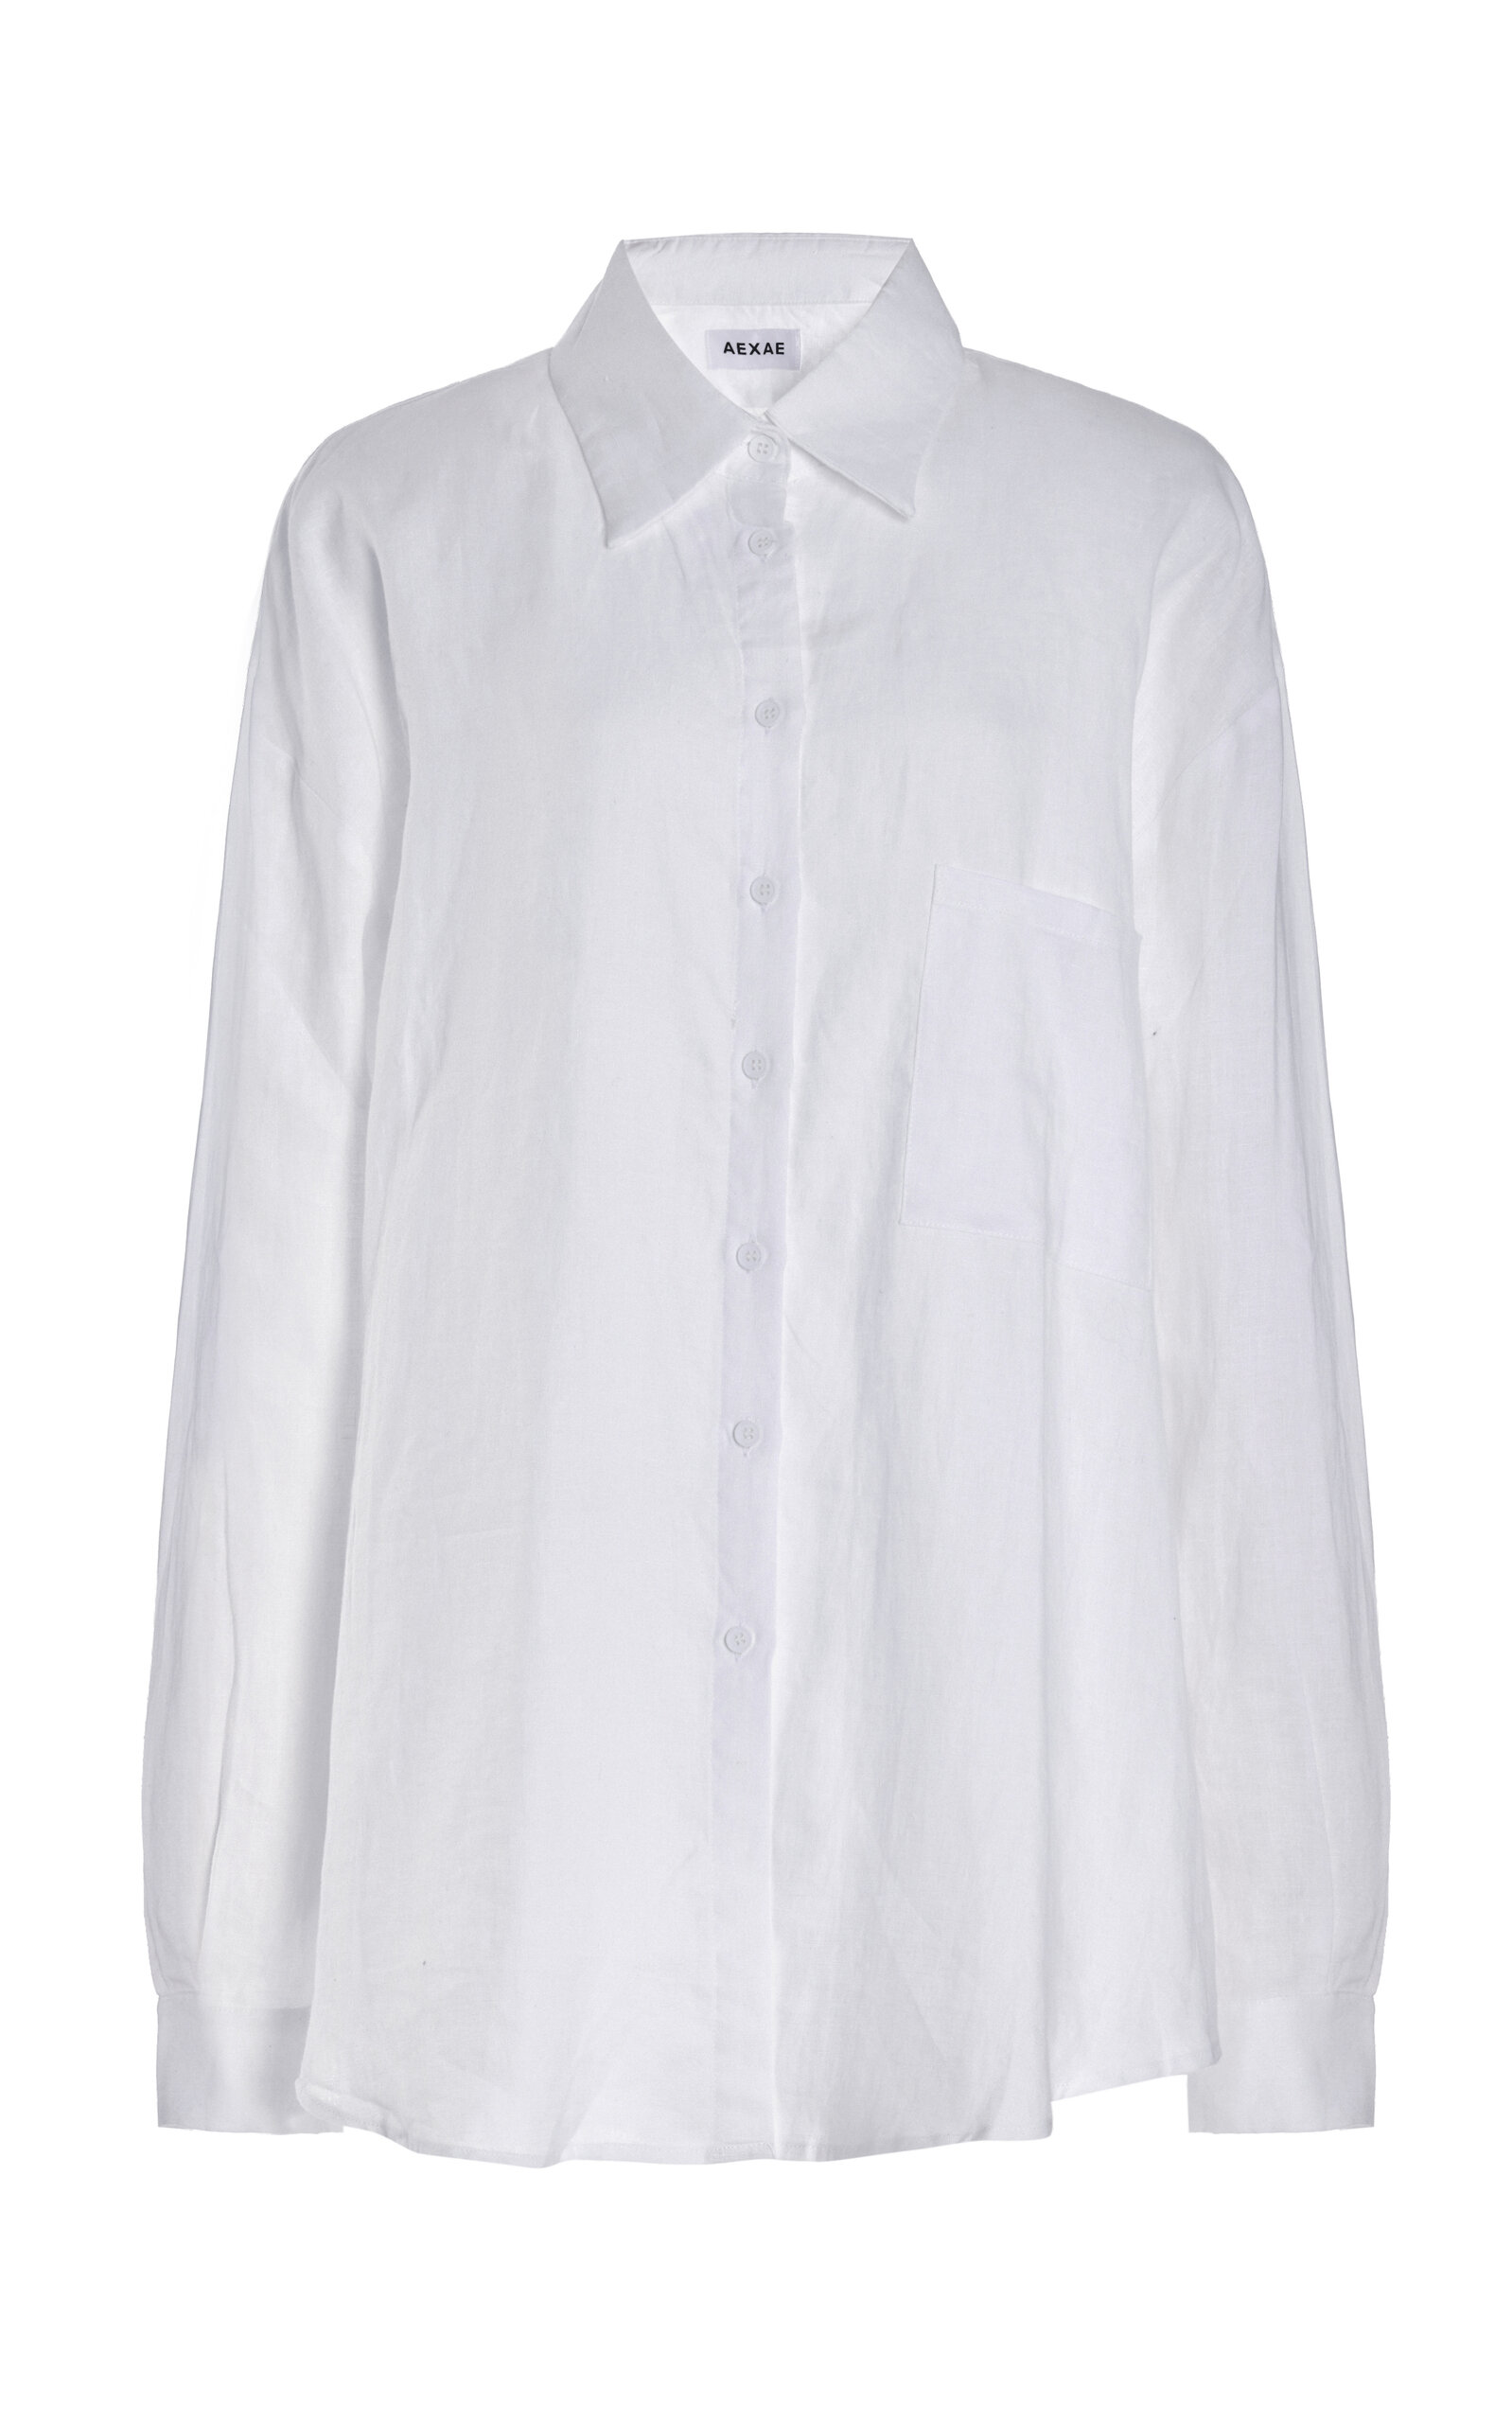 Aexae Linen Woven Shirt In White